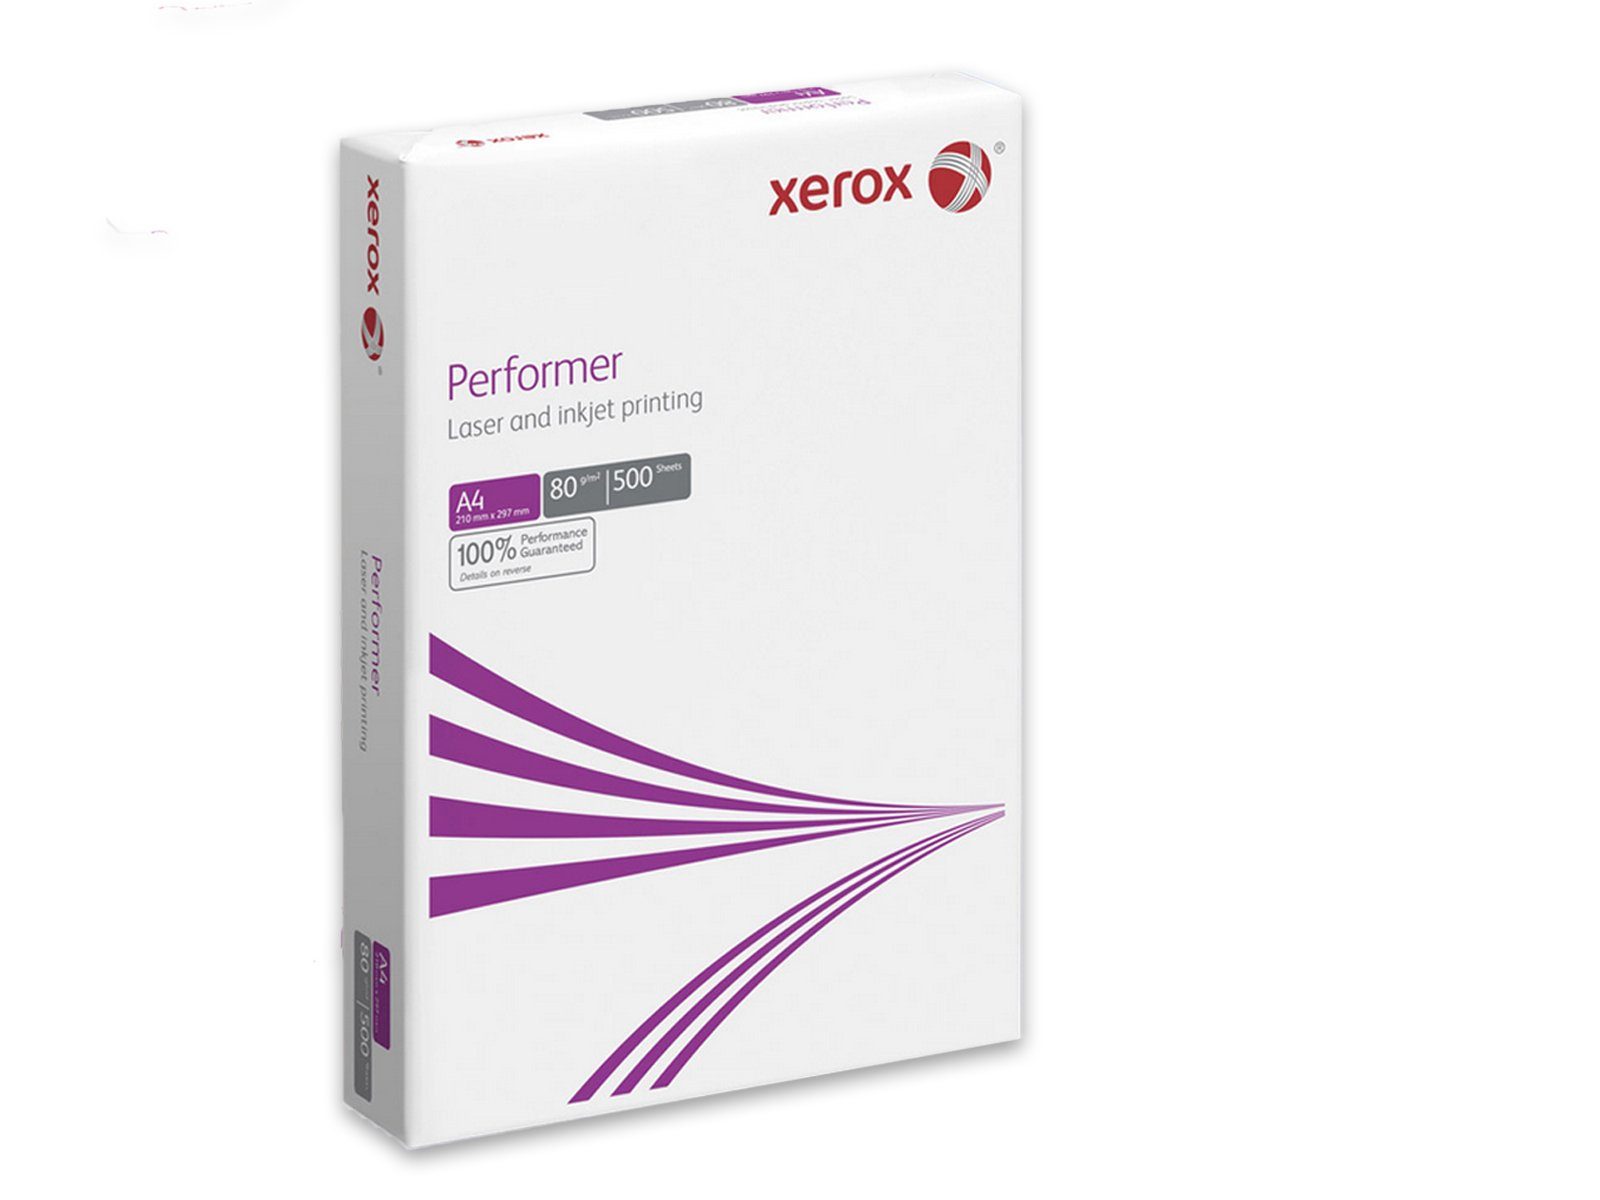 Xerox Druckerpapier Xerox Performer Kopier-Papier, 80 g/m², verschiedene Mengen